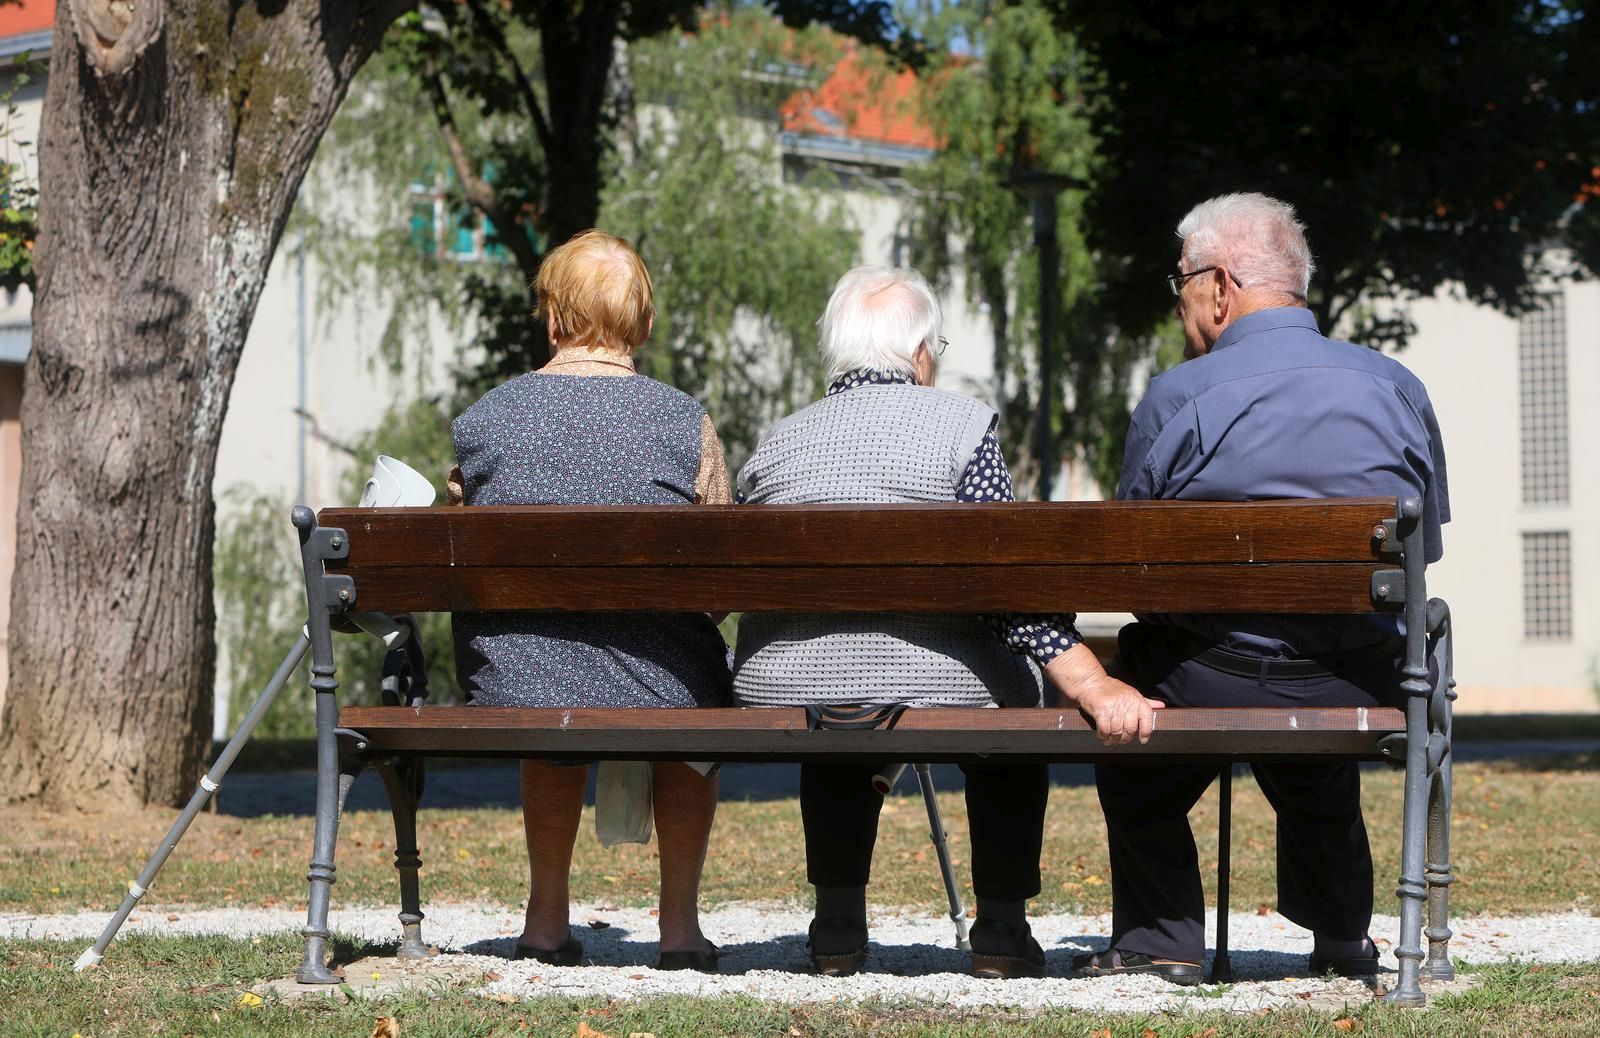 18.08.2021., Karlovac - Umirovljenici odmaraju u parku. 
Photo: Kristina Stedul Fabac/PIXSELL